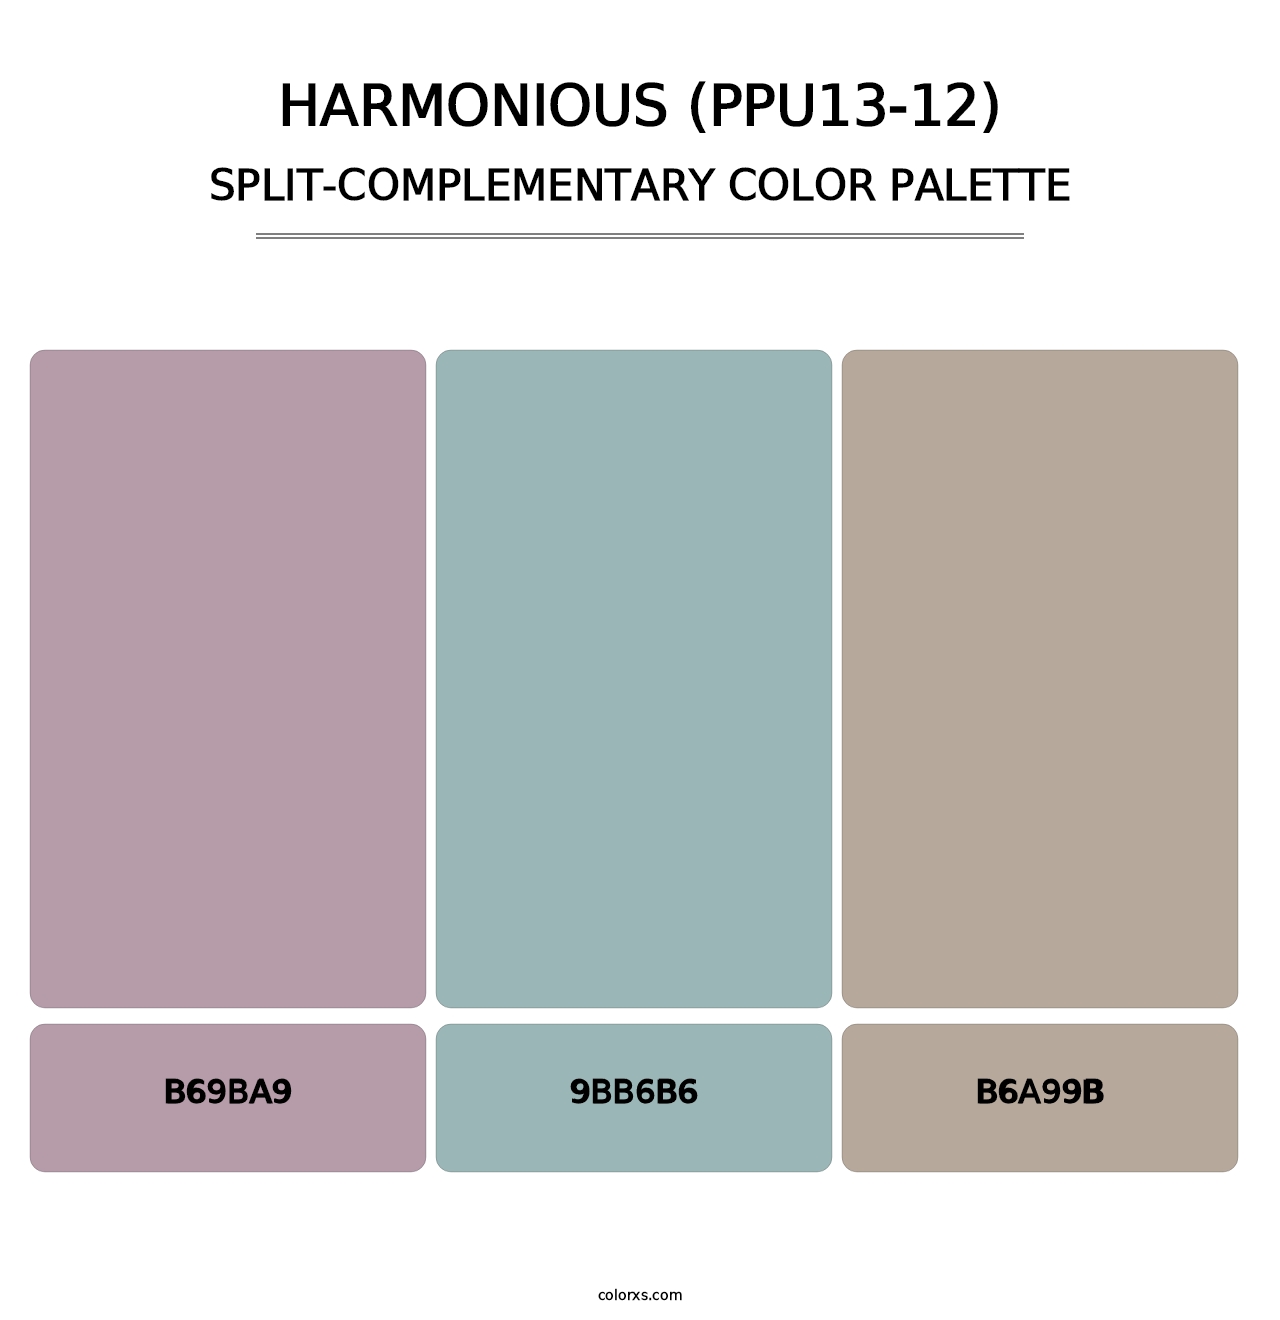 Harmonious (PPU13-12) - Split-Complementary Color Palette